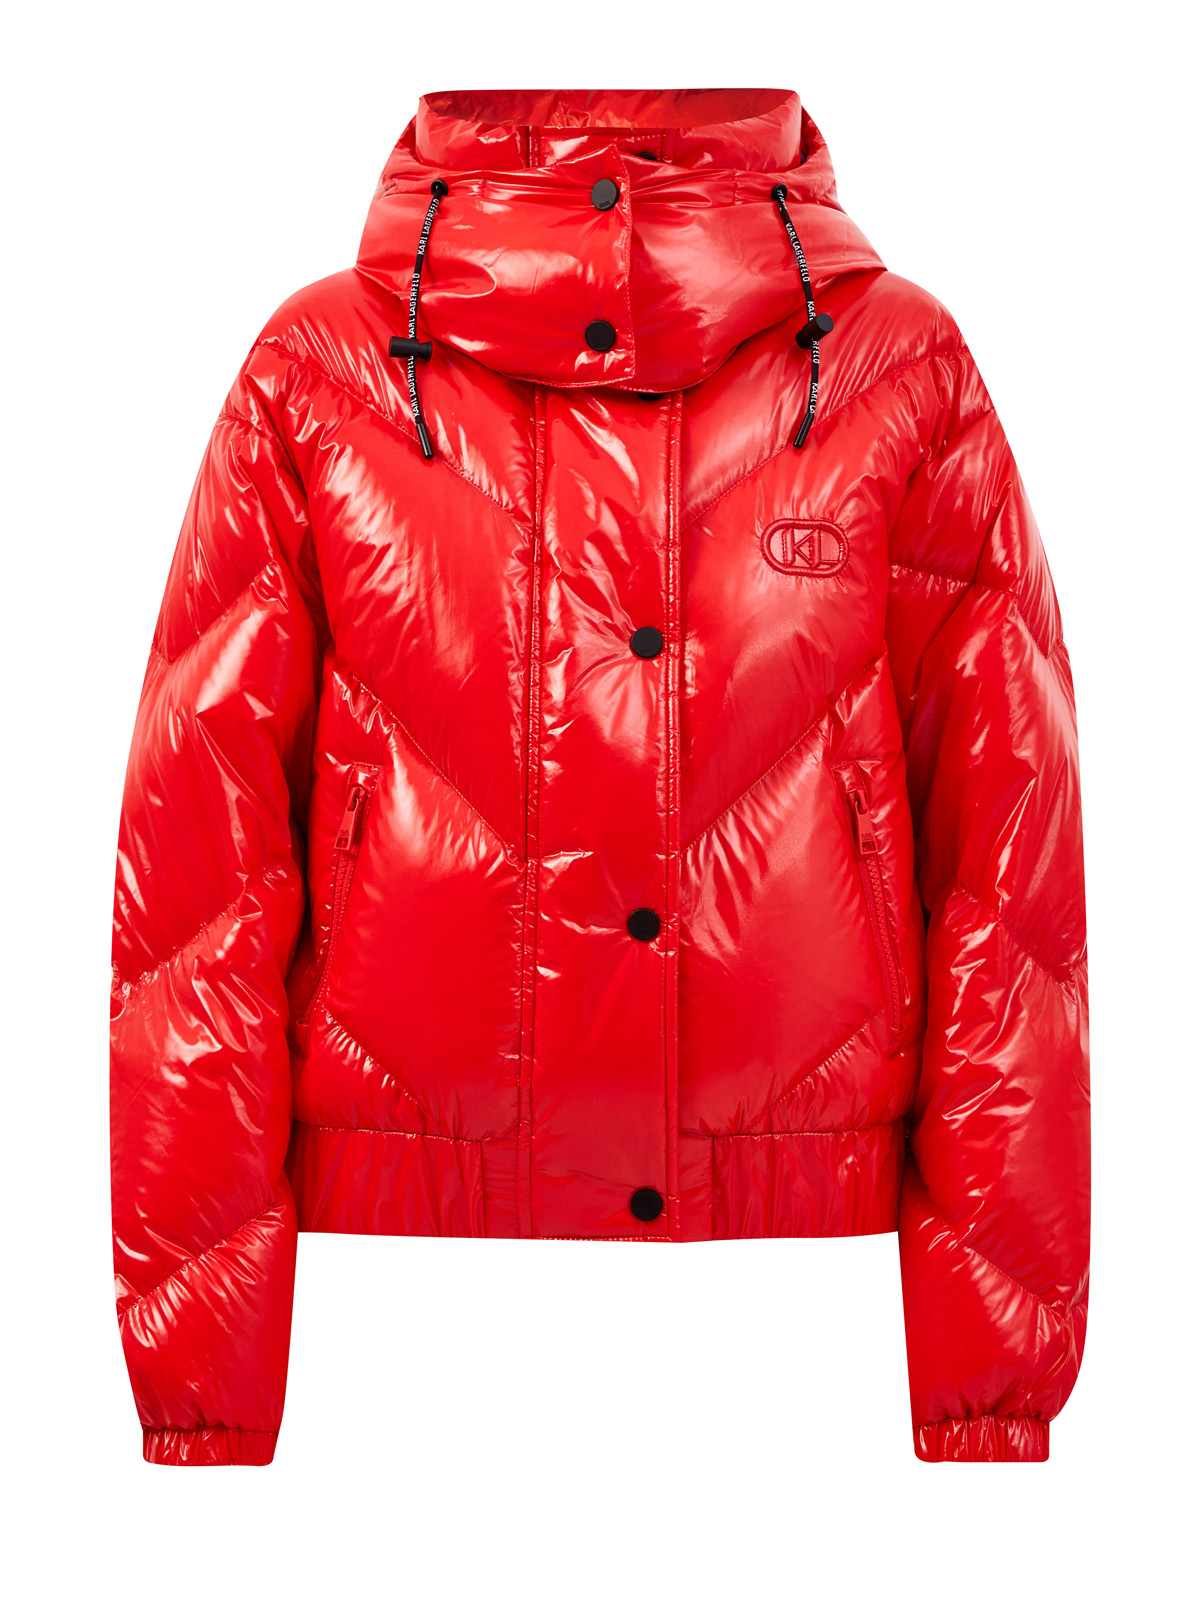 Объемная стеганая куртка K/Monogram из глянцевого нейлона KARL LAGERFELD, цвет красный, размер XS;S;M